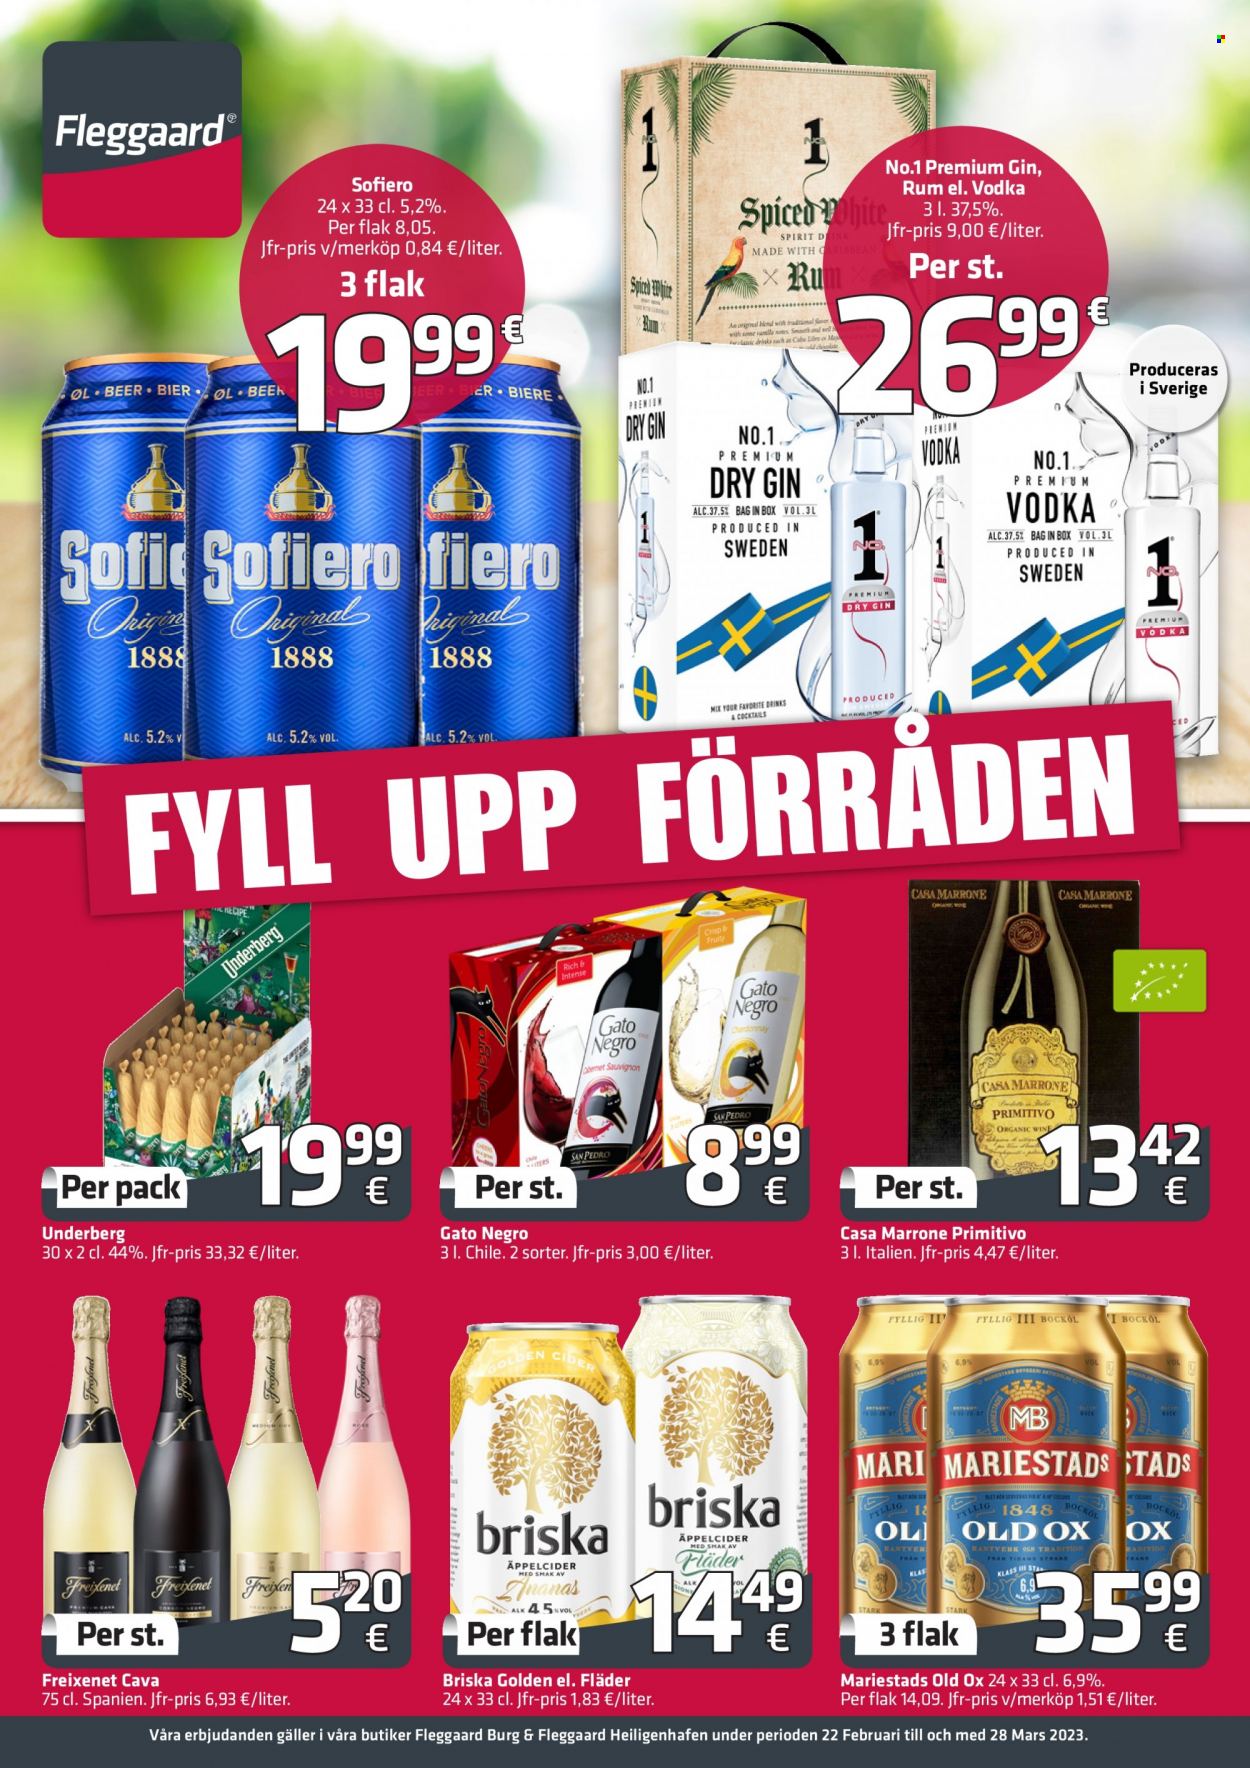 Fleggaard tilbud  - 22.2.2023 - 28.3.2023 - tilbudsprodukter - Mars, Chardonnay, vin, cider, gin, vodka, øl. Side 1.